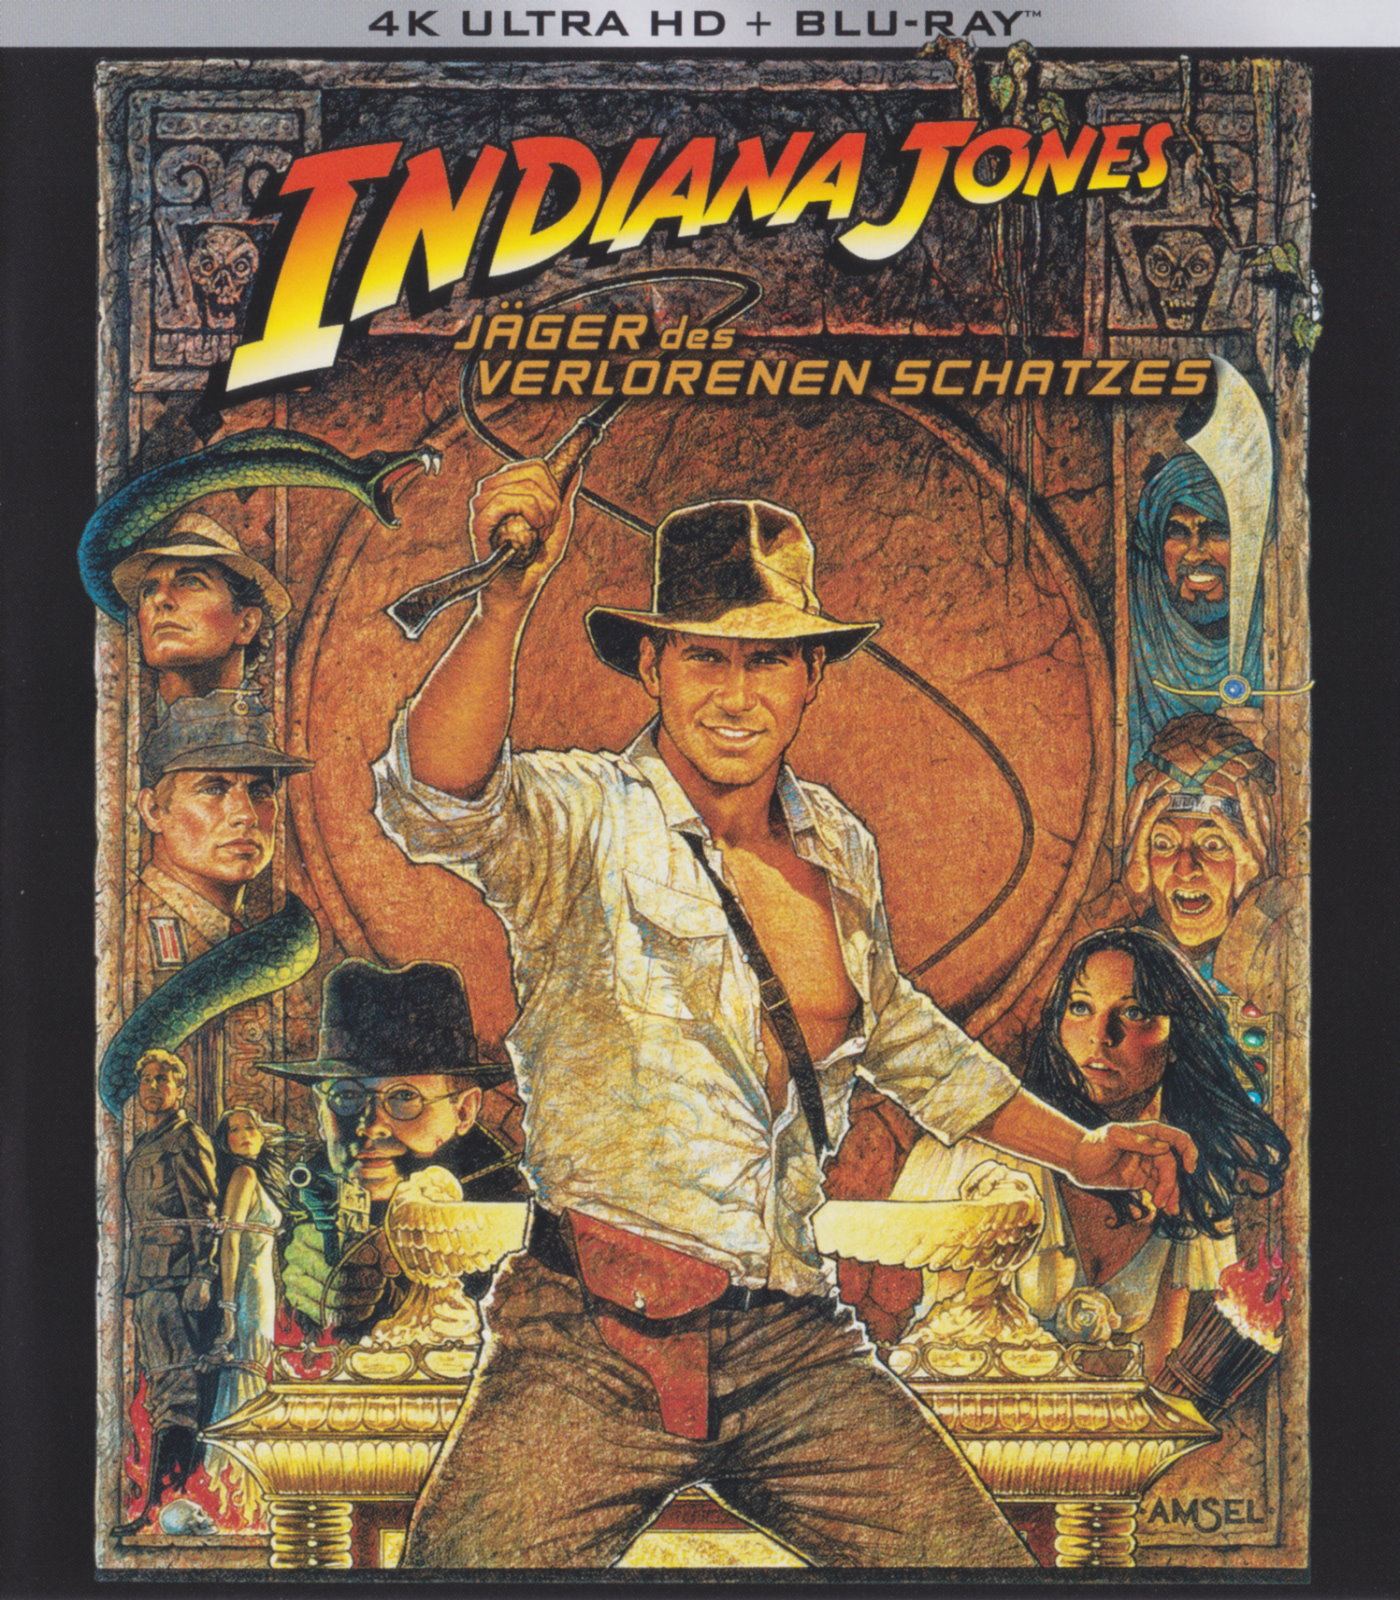 Cover - Indiana Jones - Jäger des verlorenen Schatzes.jpg